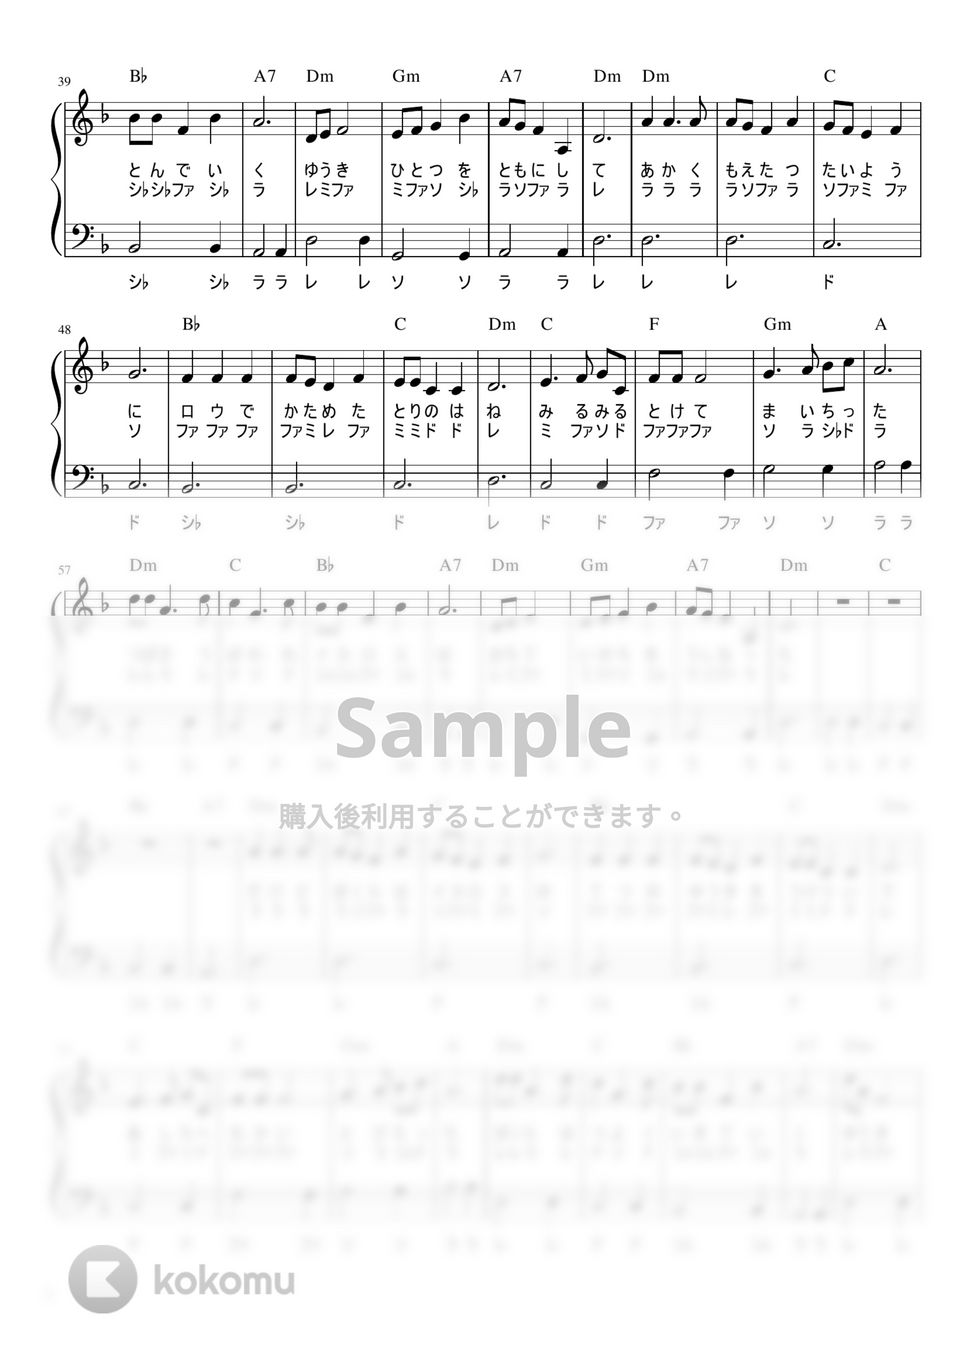 勇気一つを友にして (かんたん / 歌詞付き / ドレミ付き / 初心者) by piano.tokyo